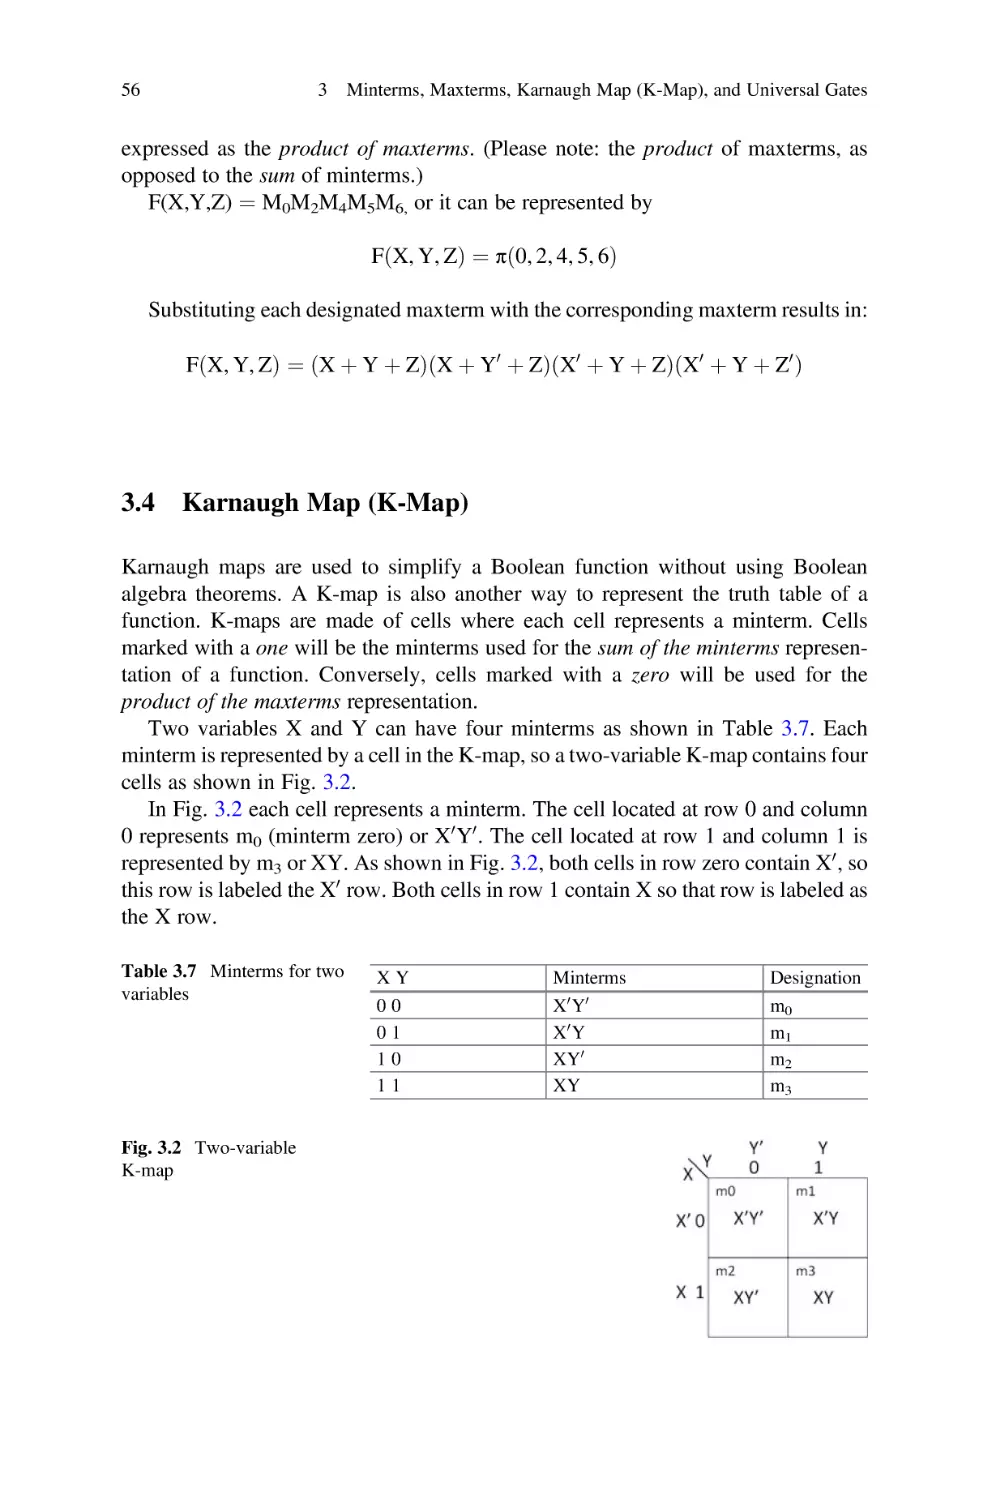 3.4 Karnaugh Map (K-Map)